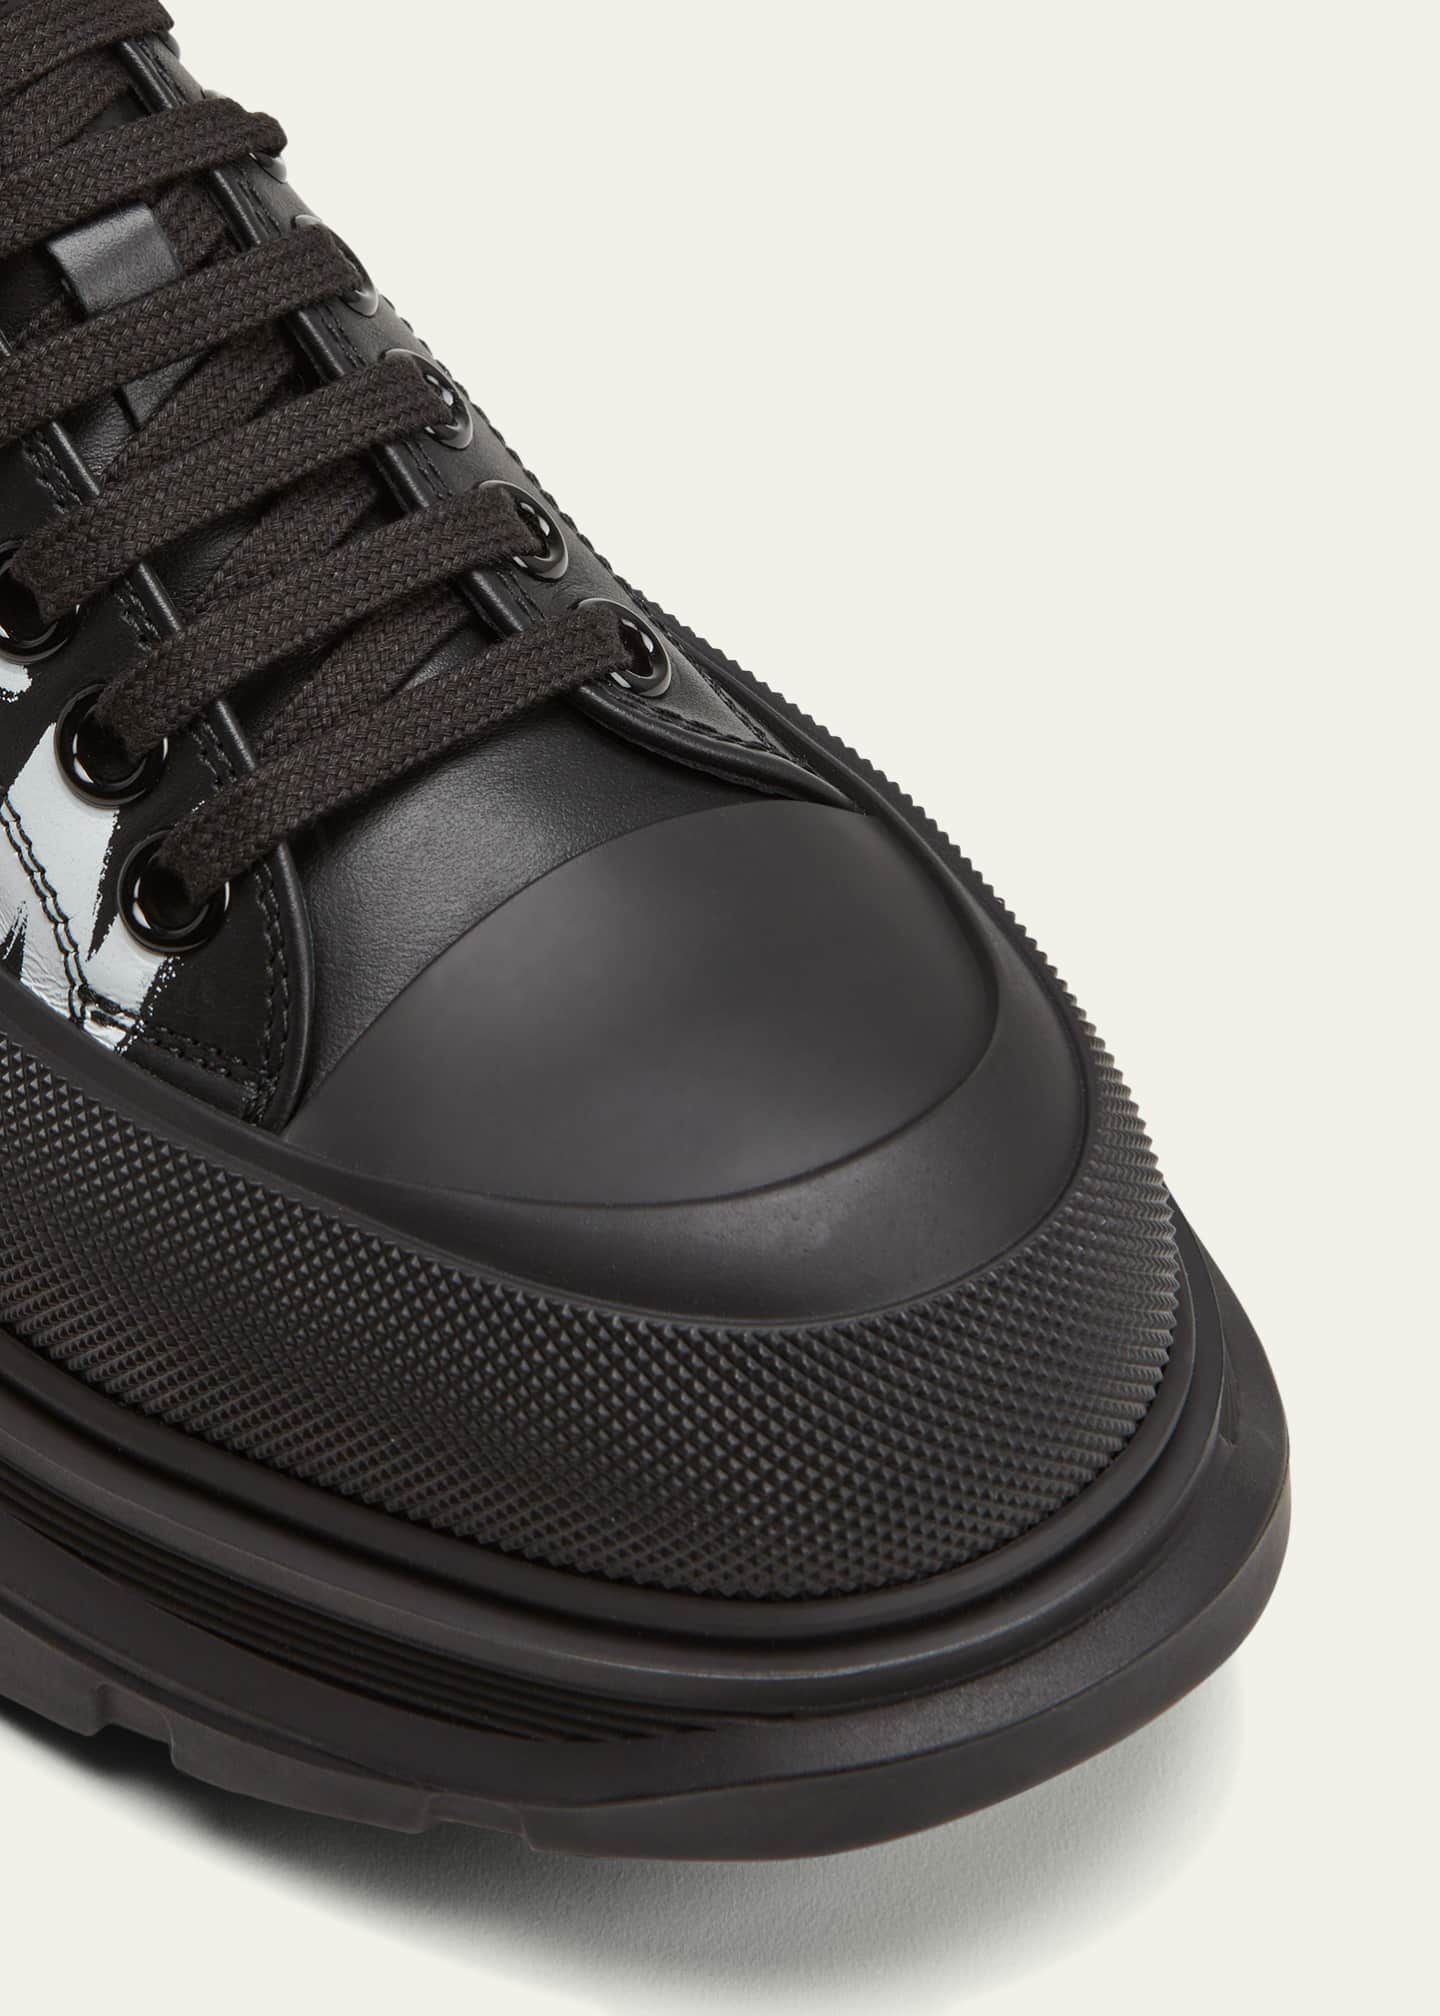 Alexander McQueen Men's Tread Slick Leather Low-Top Sneakers - Bergdorf ...